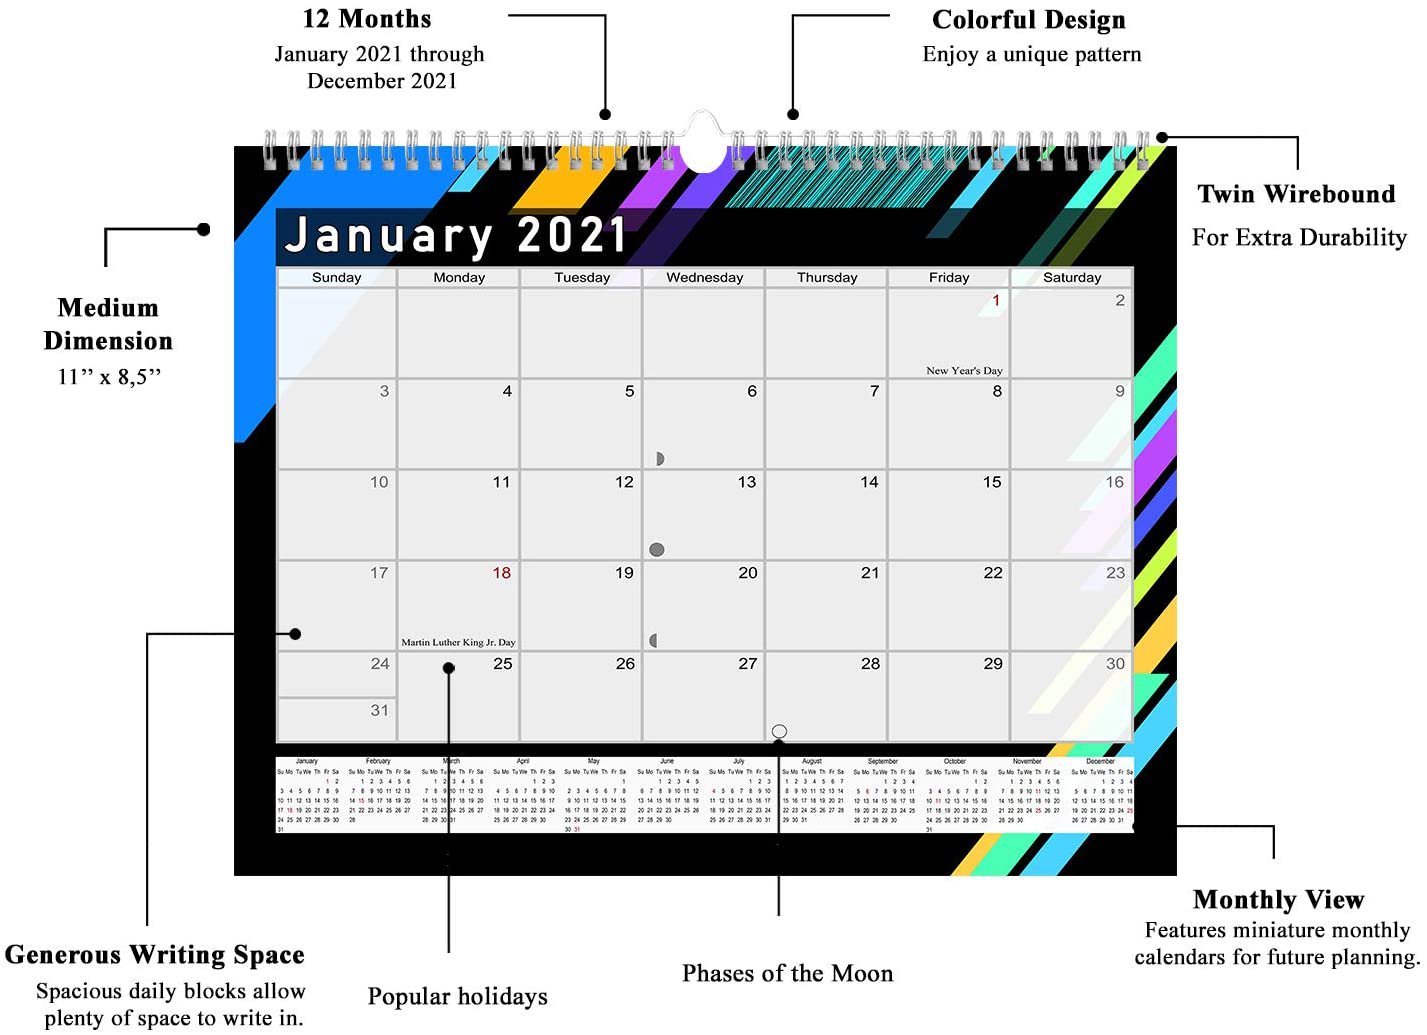 2021 Monthly Spiral Bound Calendar Edition #013